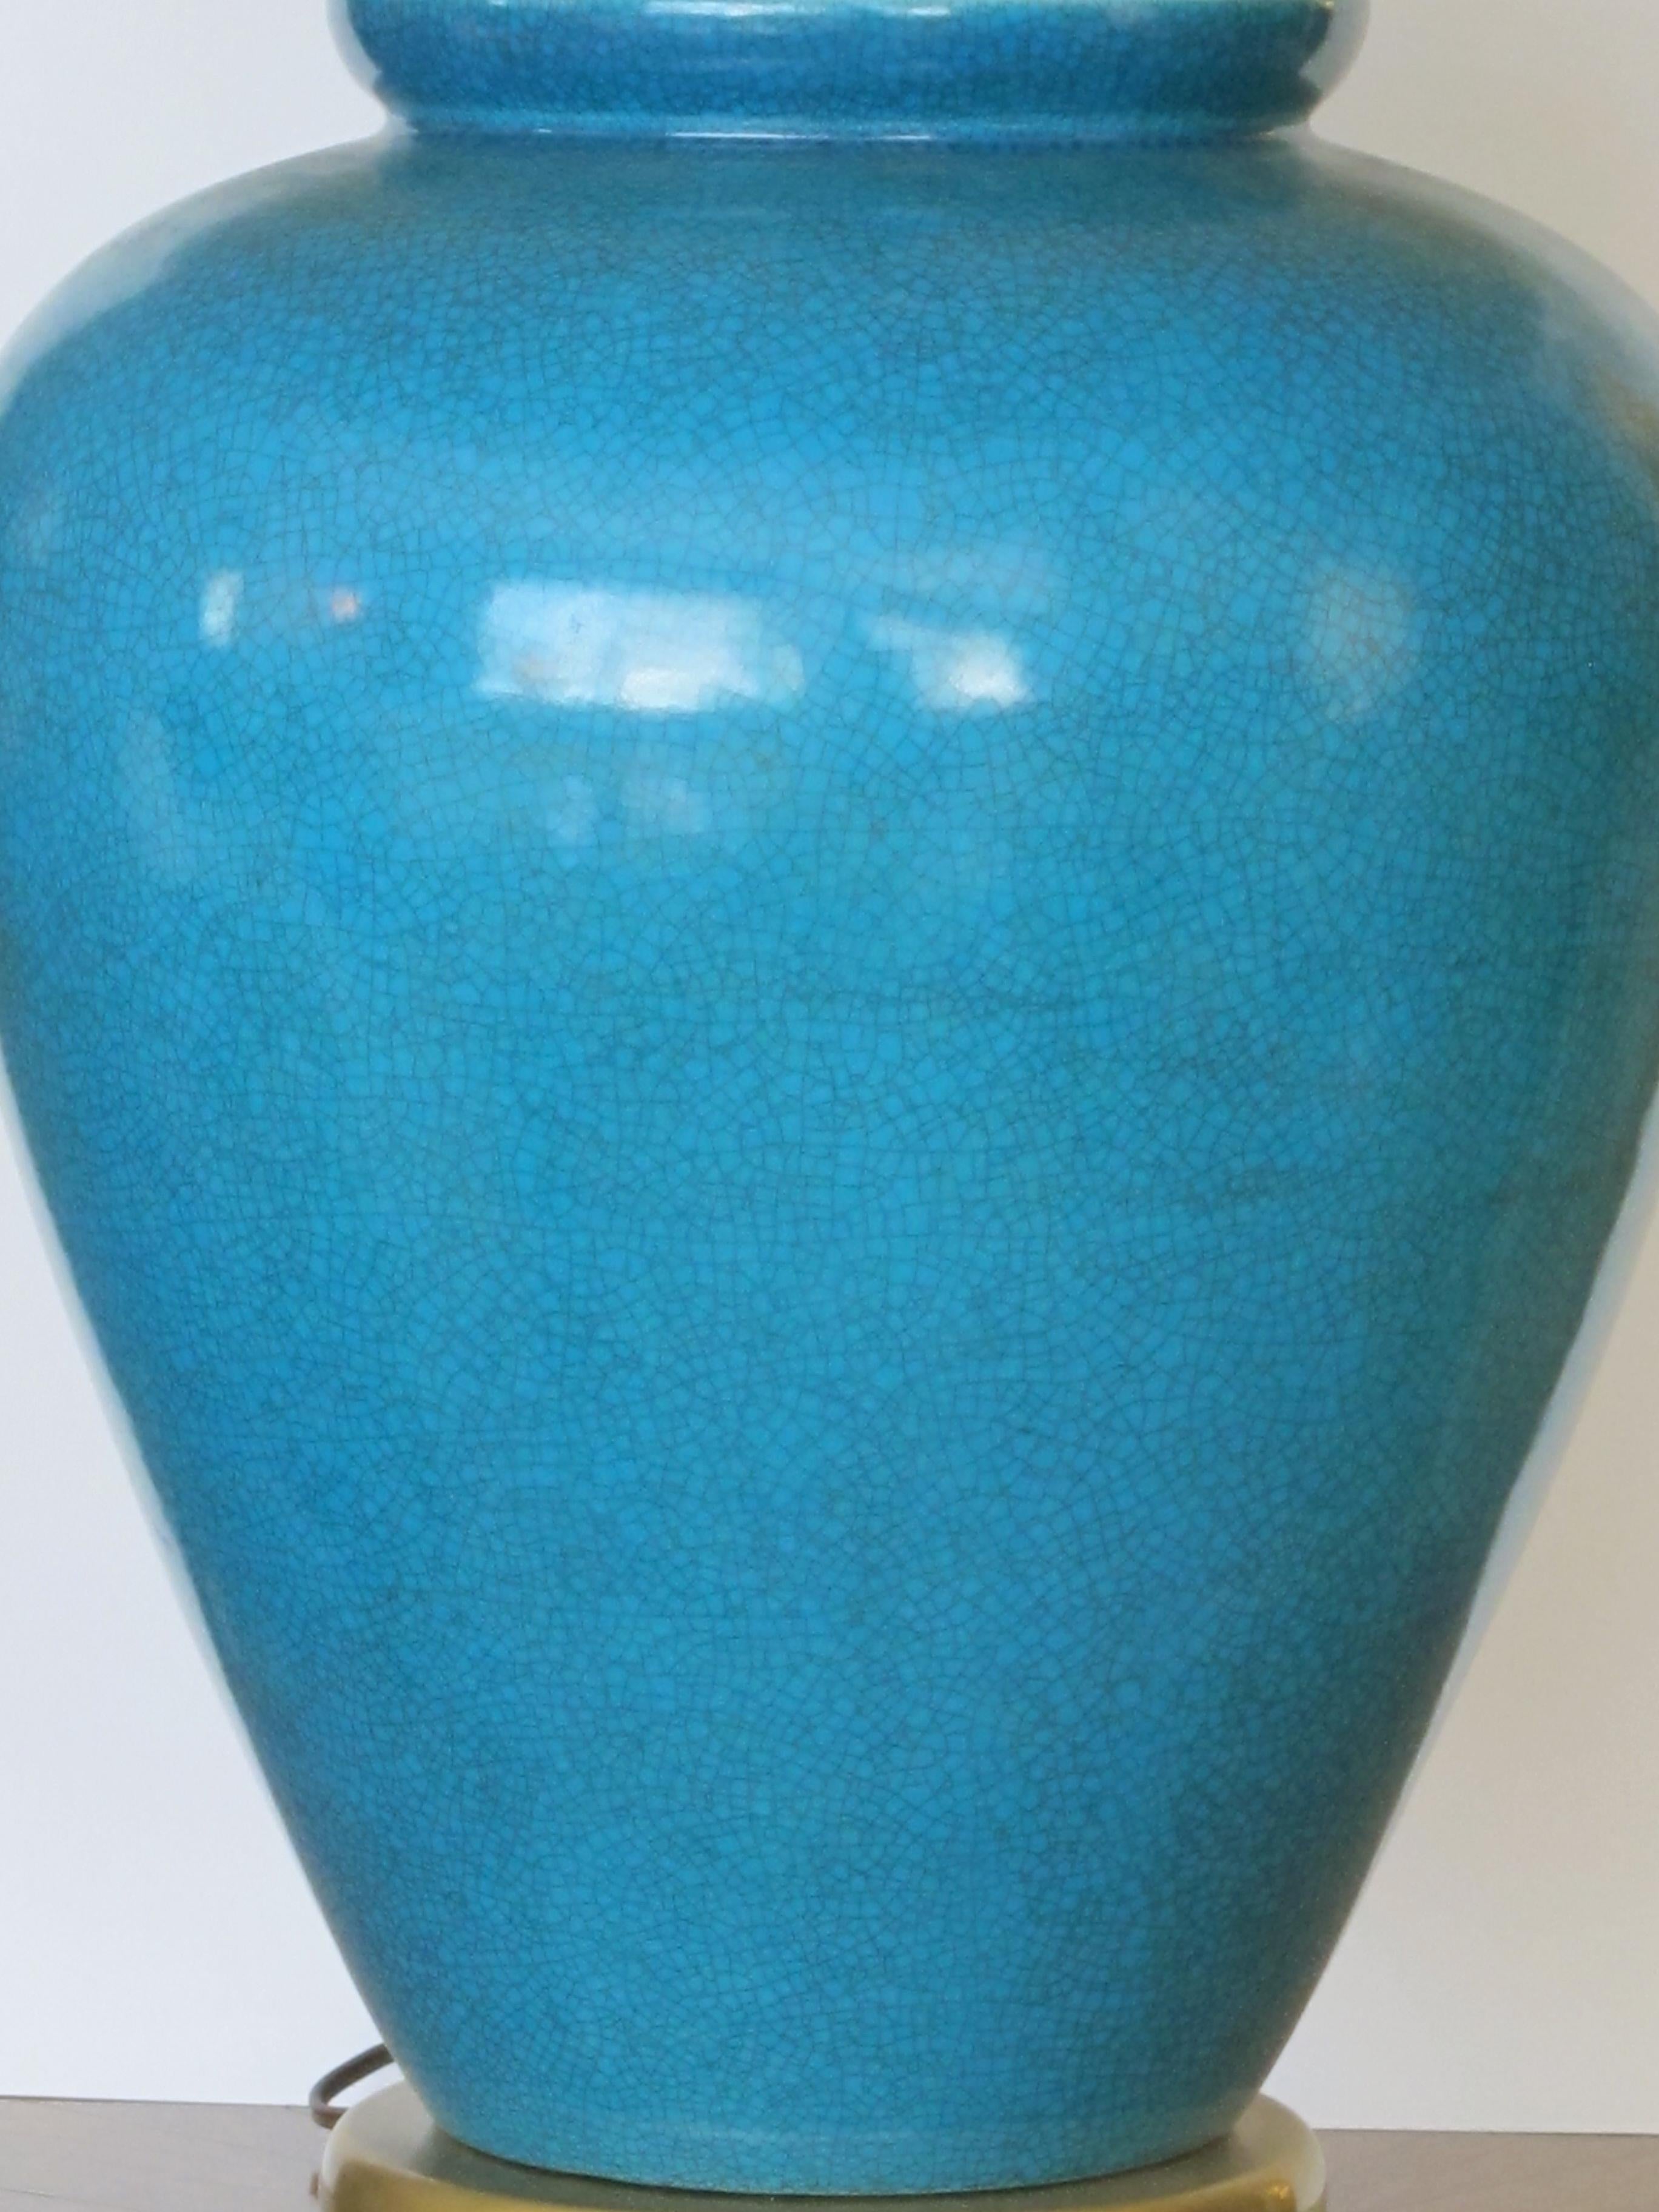 Une remarquable et grande paire de lampes américaines des années 1960 en céramique turquoise à glaçure craquelée par Frederick Cooper ; chaque lampe de forme ovoïde audacieuse à glaçure craquelée turquoise richement colorée ; munie de capuchons et